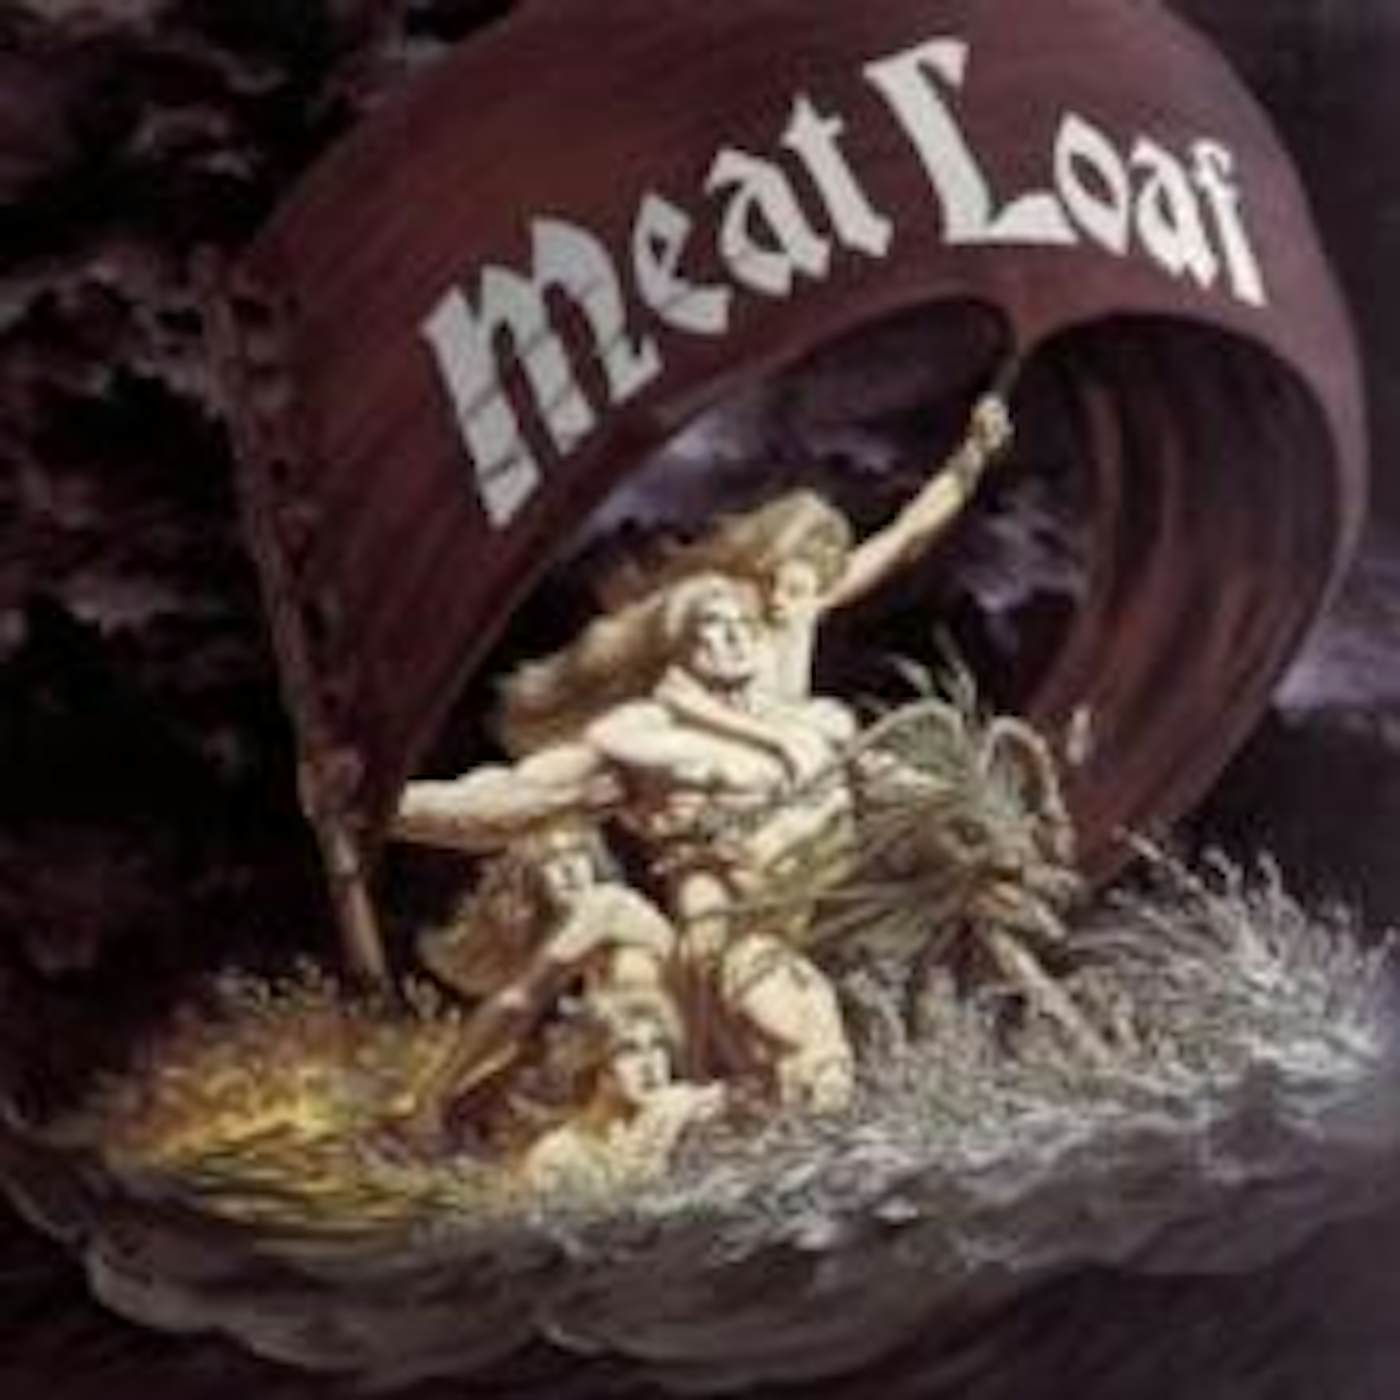 Meat Loaf LP Vinyl Record - Dead Ringer